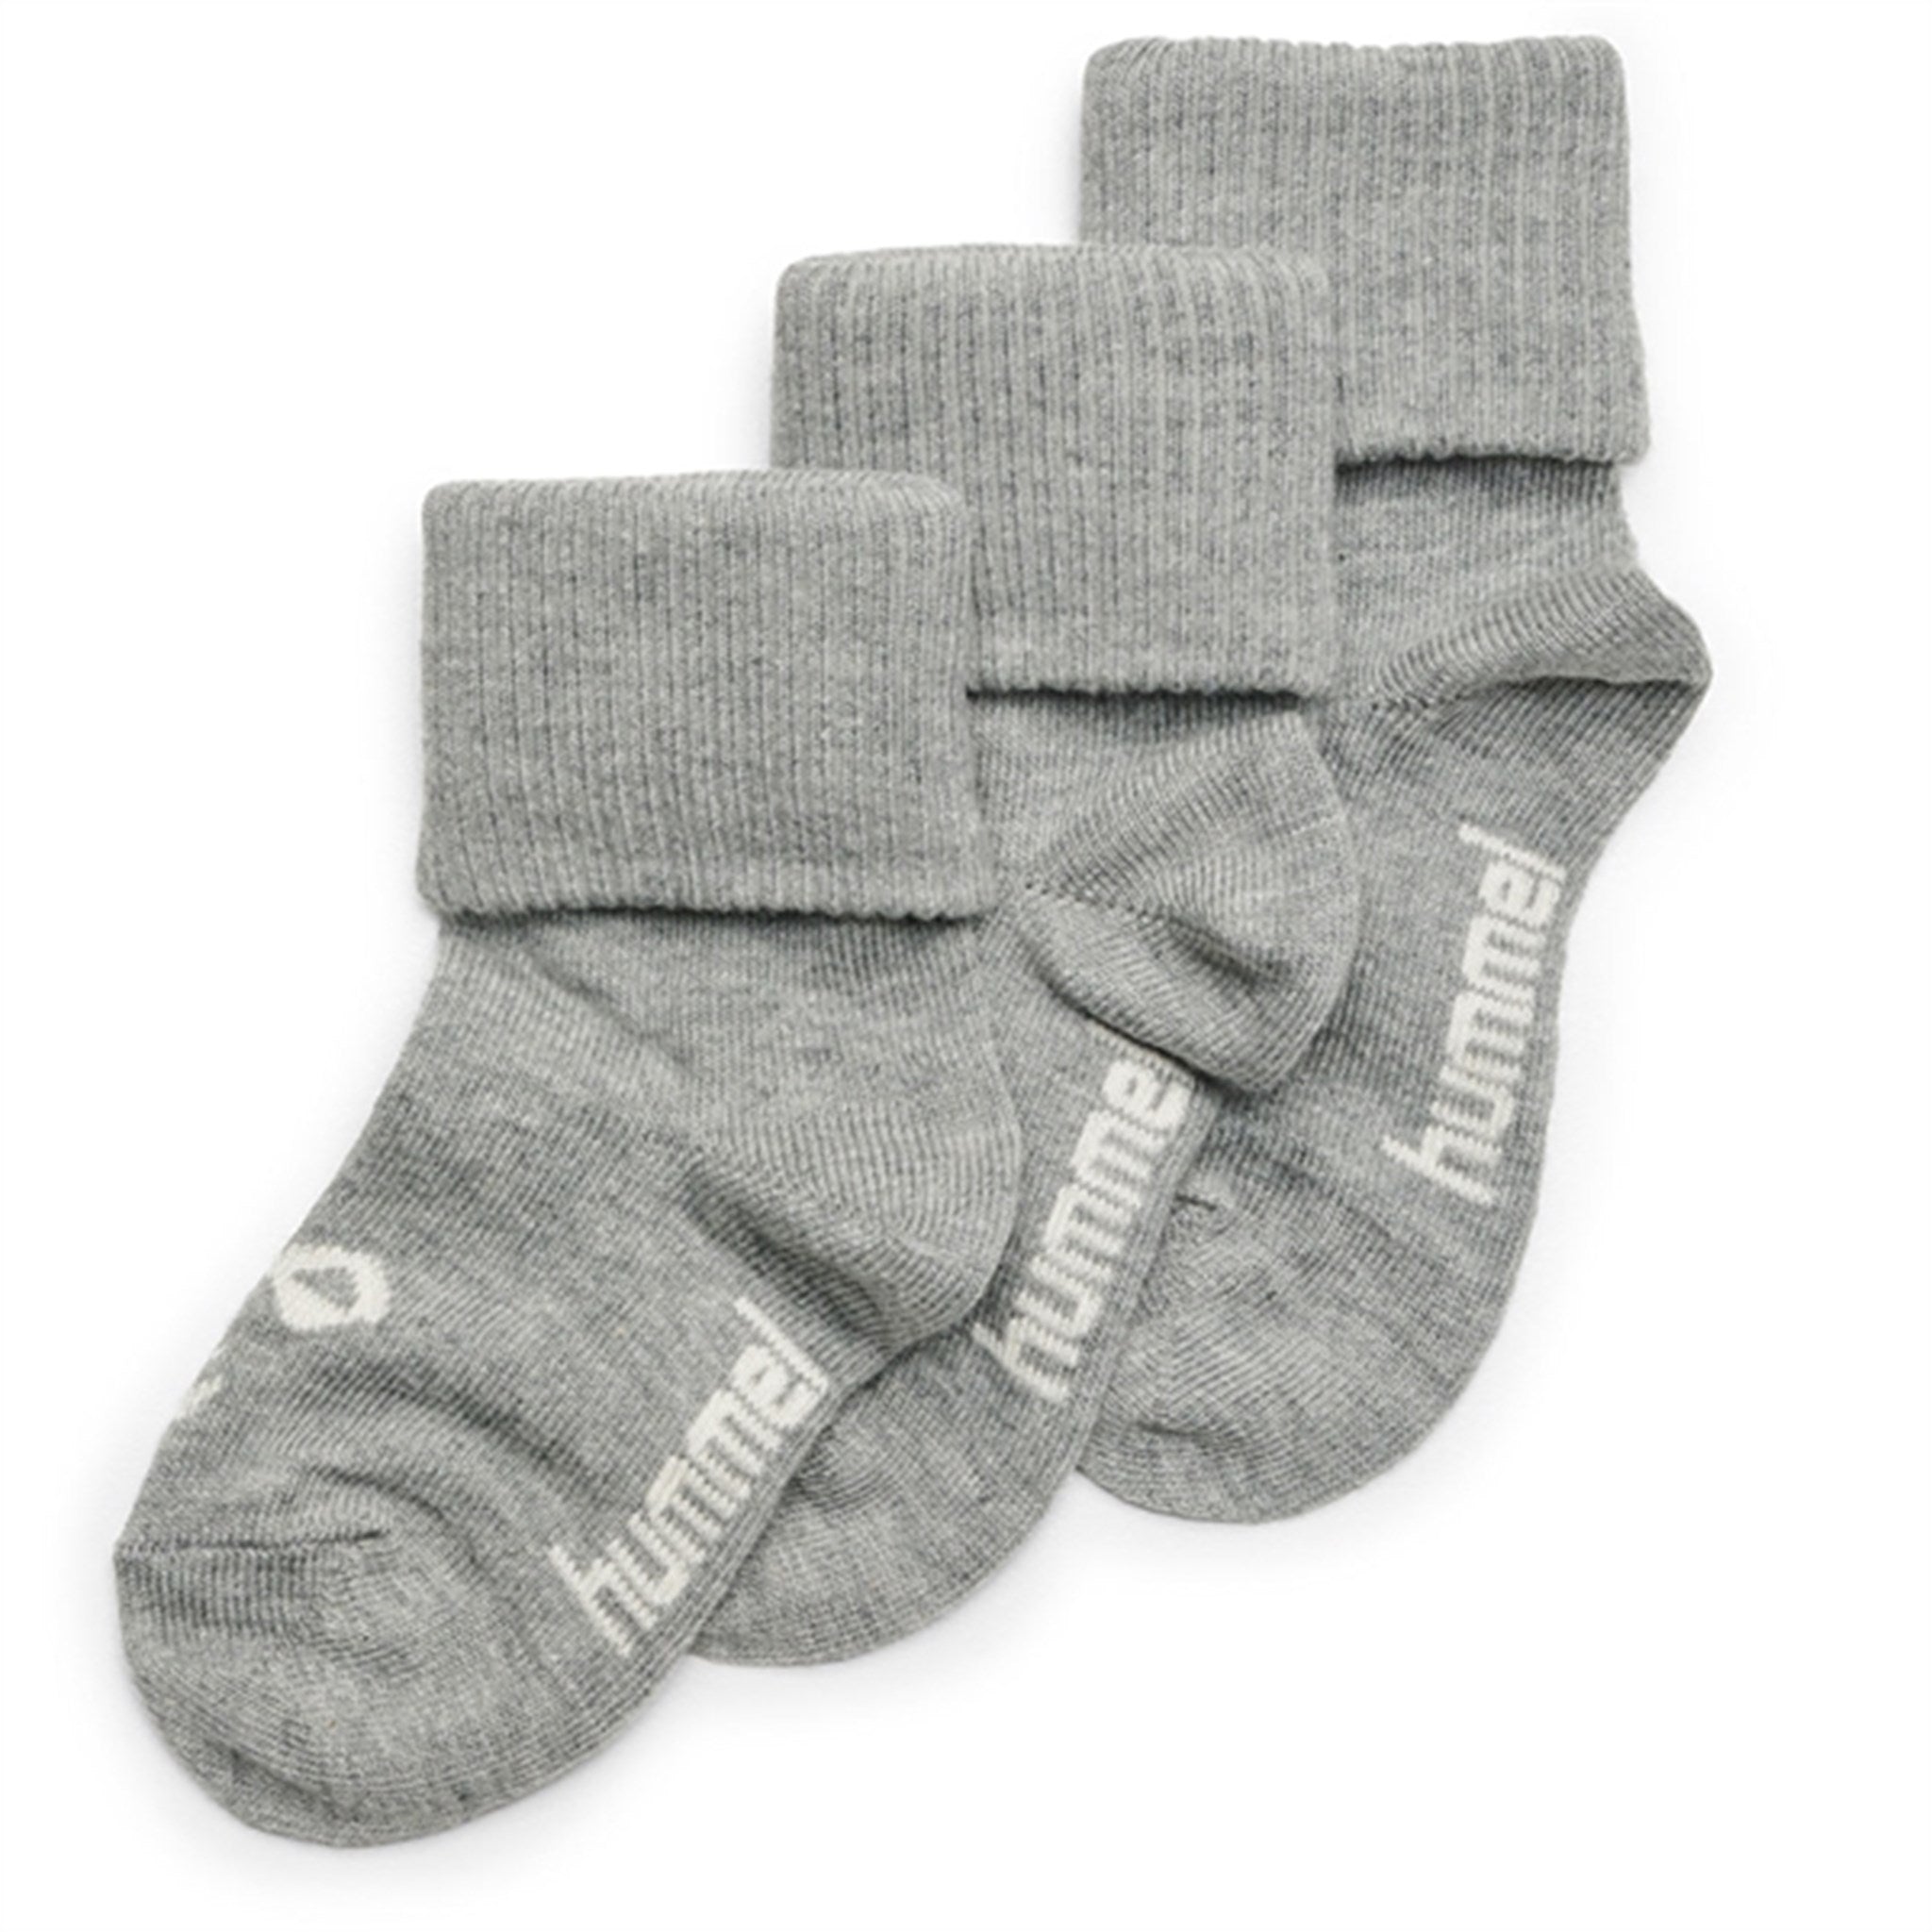 Hummel Grey Melange Sora Socks 3-Pack